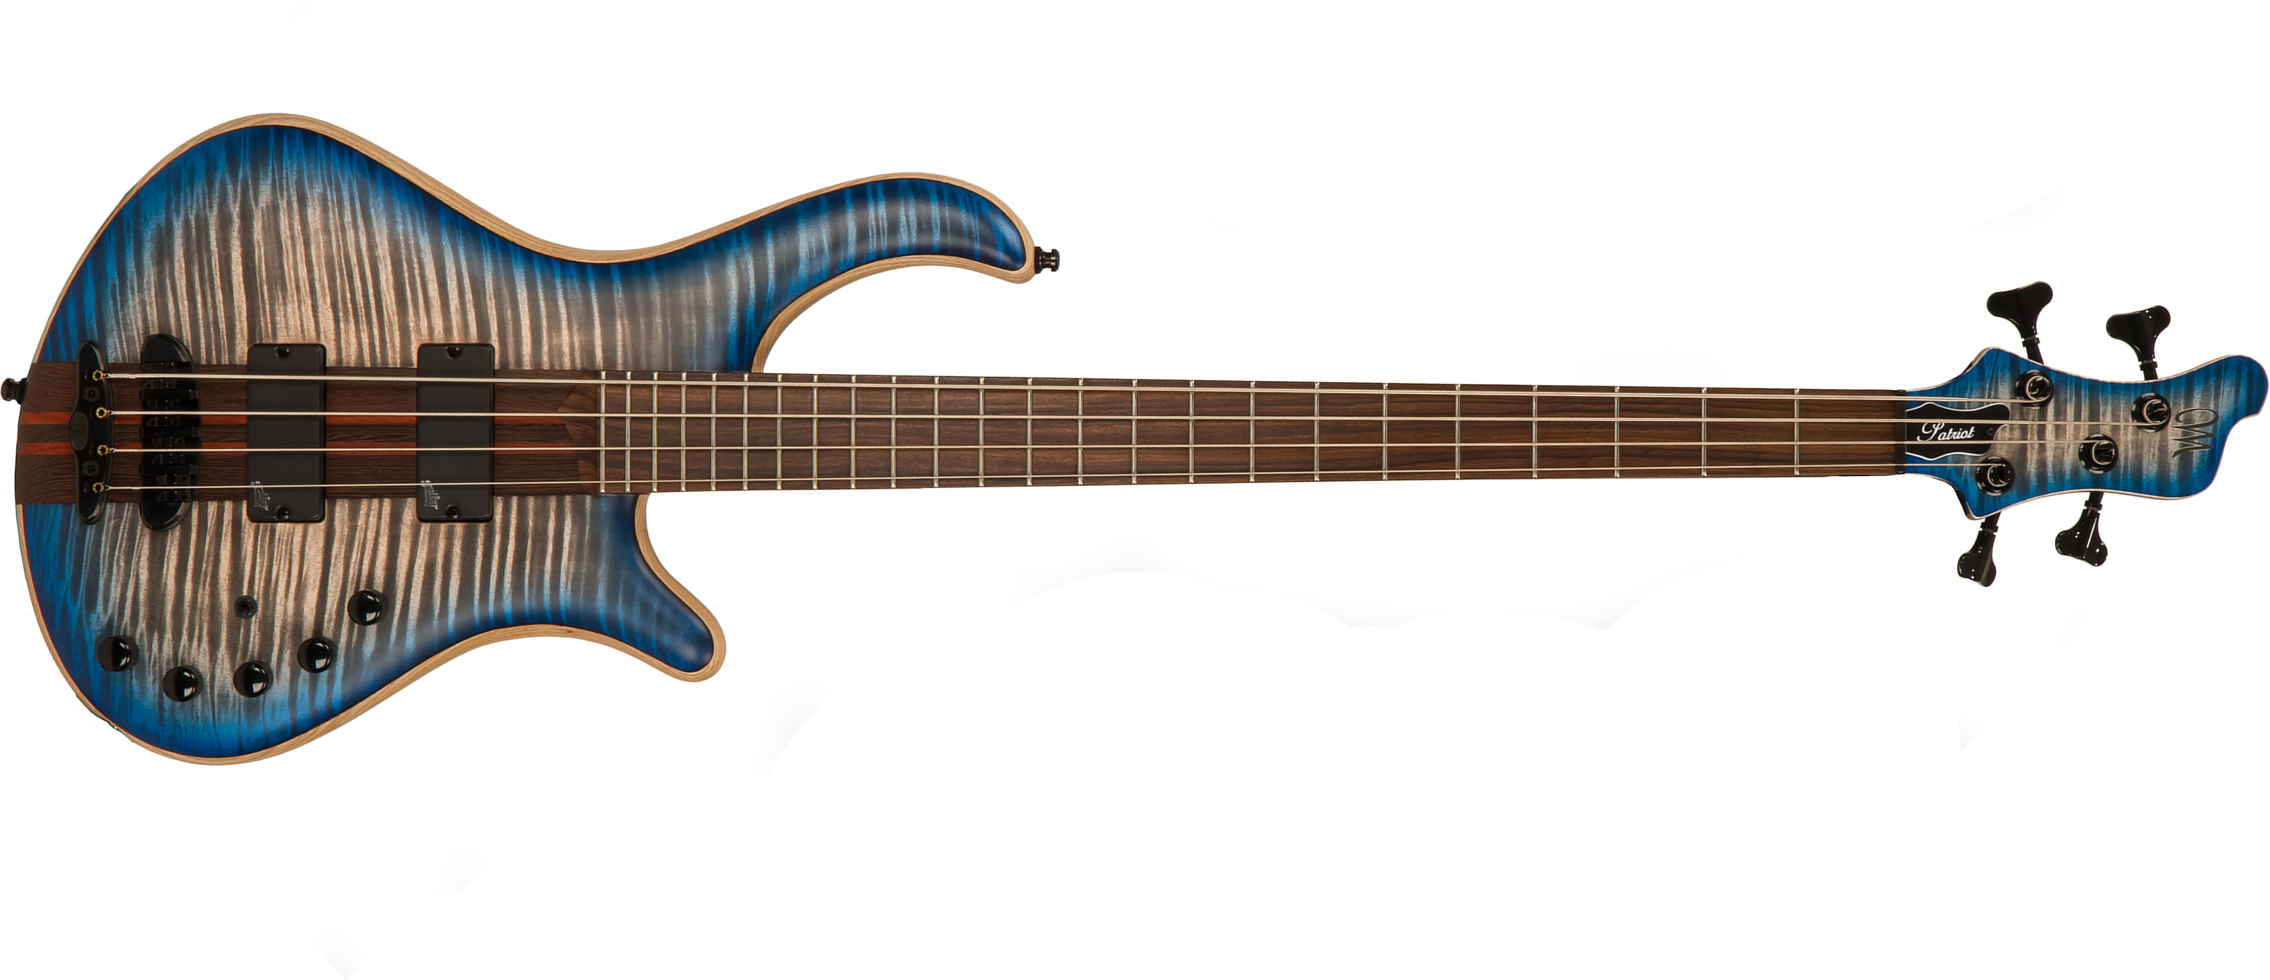 Mayones Guitars Patriot 4-cordes Aguilar Rw - Jeans Blue Flamed Maple - Basse Électrique Solid Body - Main picture